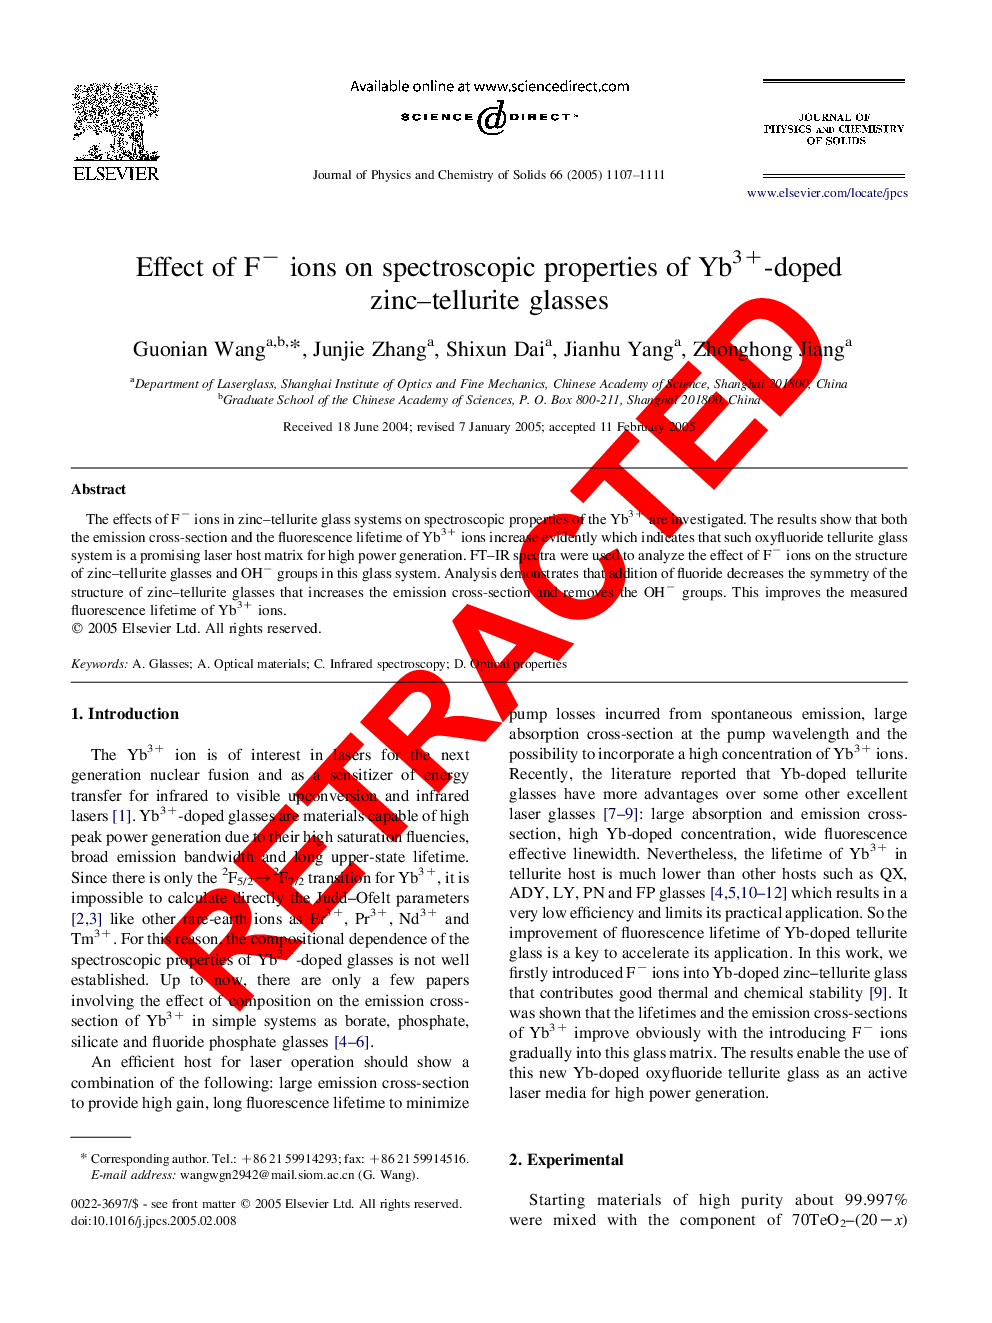 RETRACTED: Effect of Fâ ions on spectroscopic properties of Yb3+-doped zinc-tellurite glasses